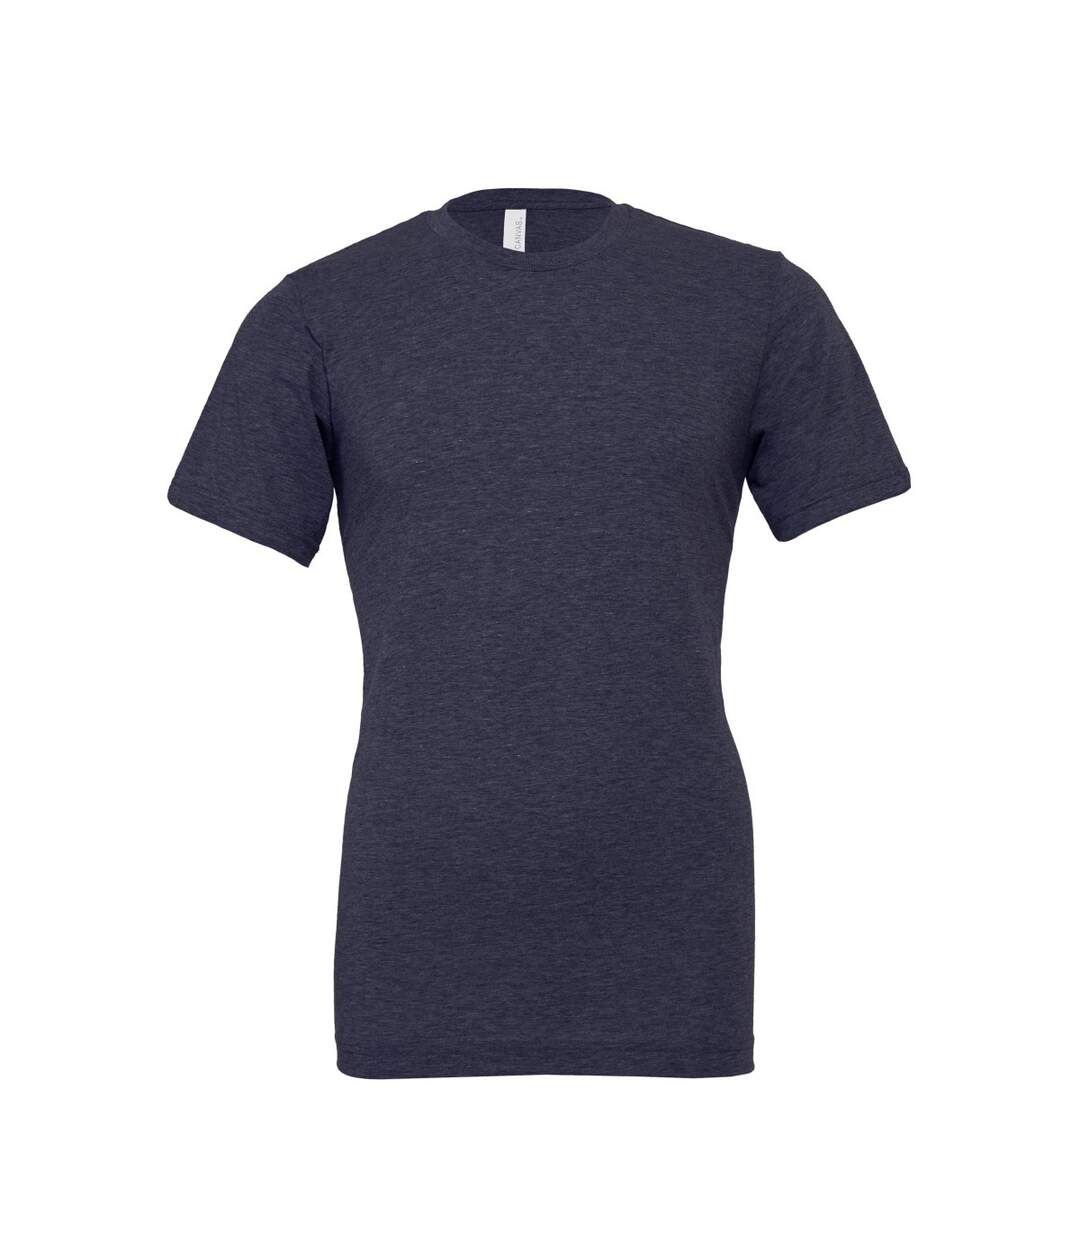 Bella + Canvas - T-shirt - Adulte (Bleu nuit chiné) - UTPC3390